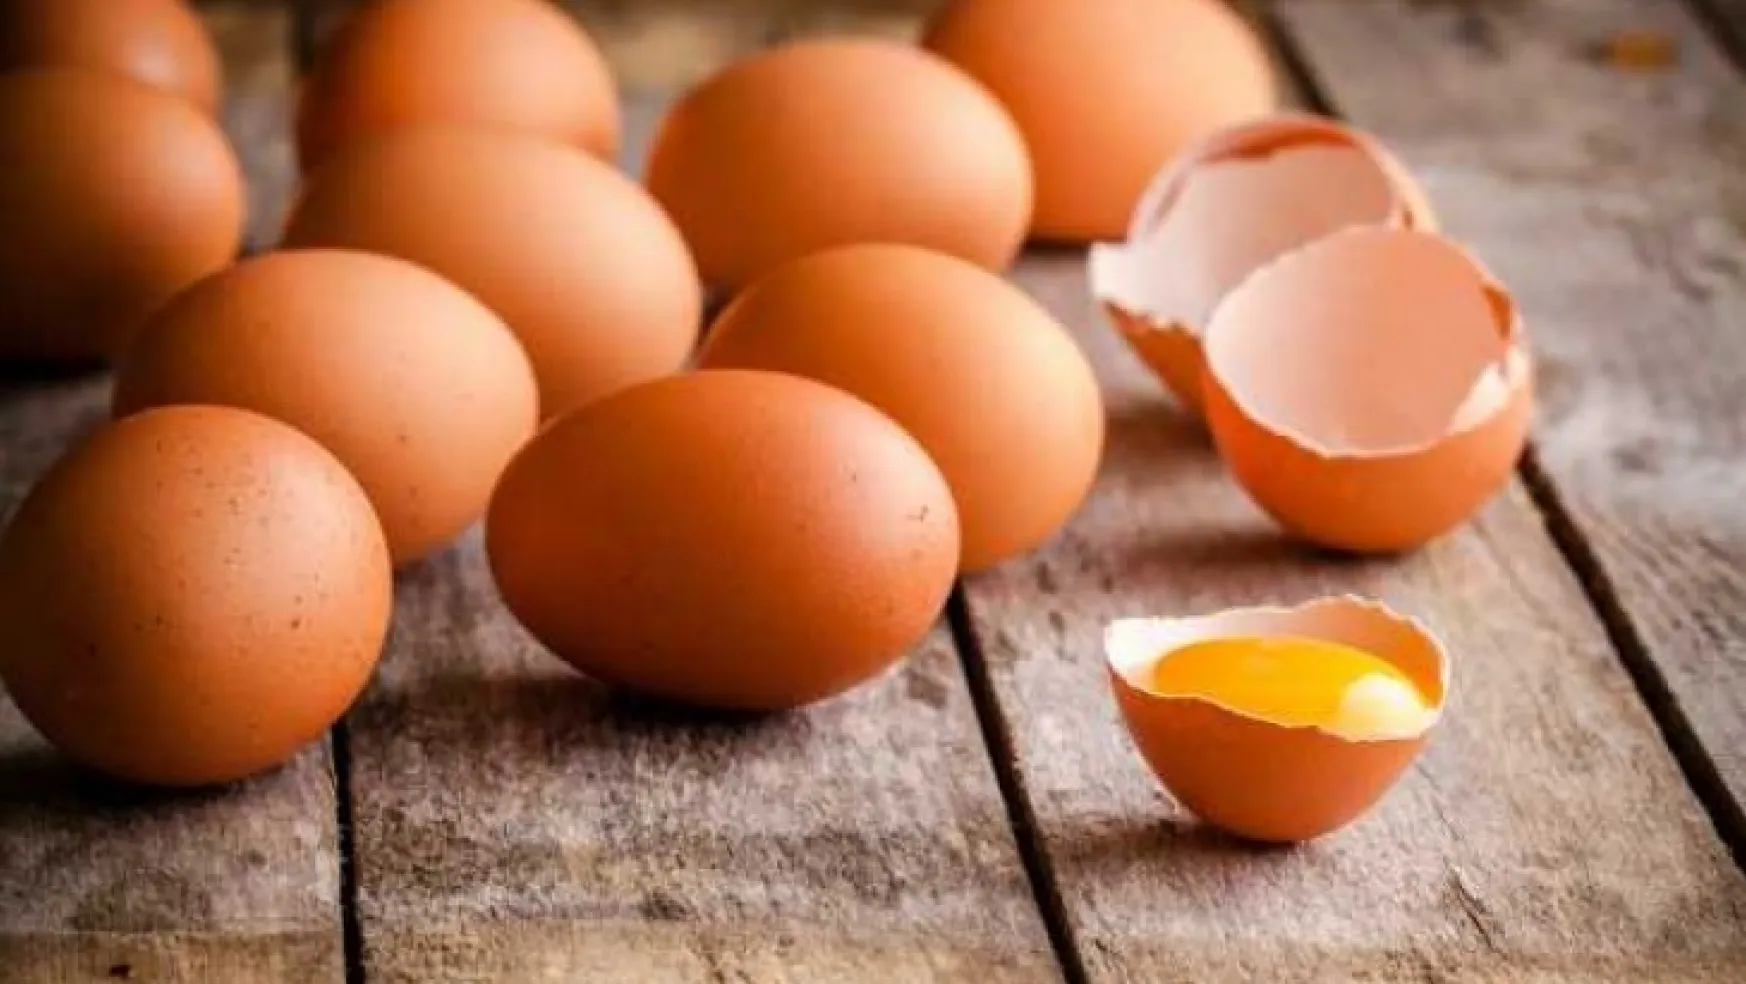 Yumurta fiyatları 2 kat arttı